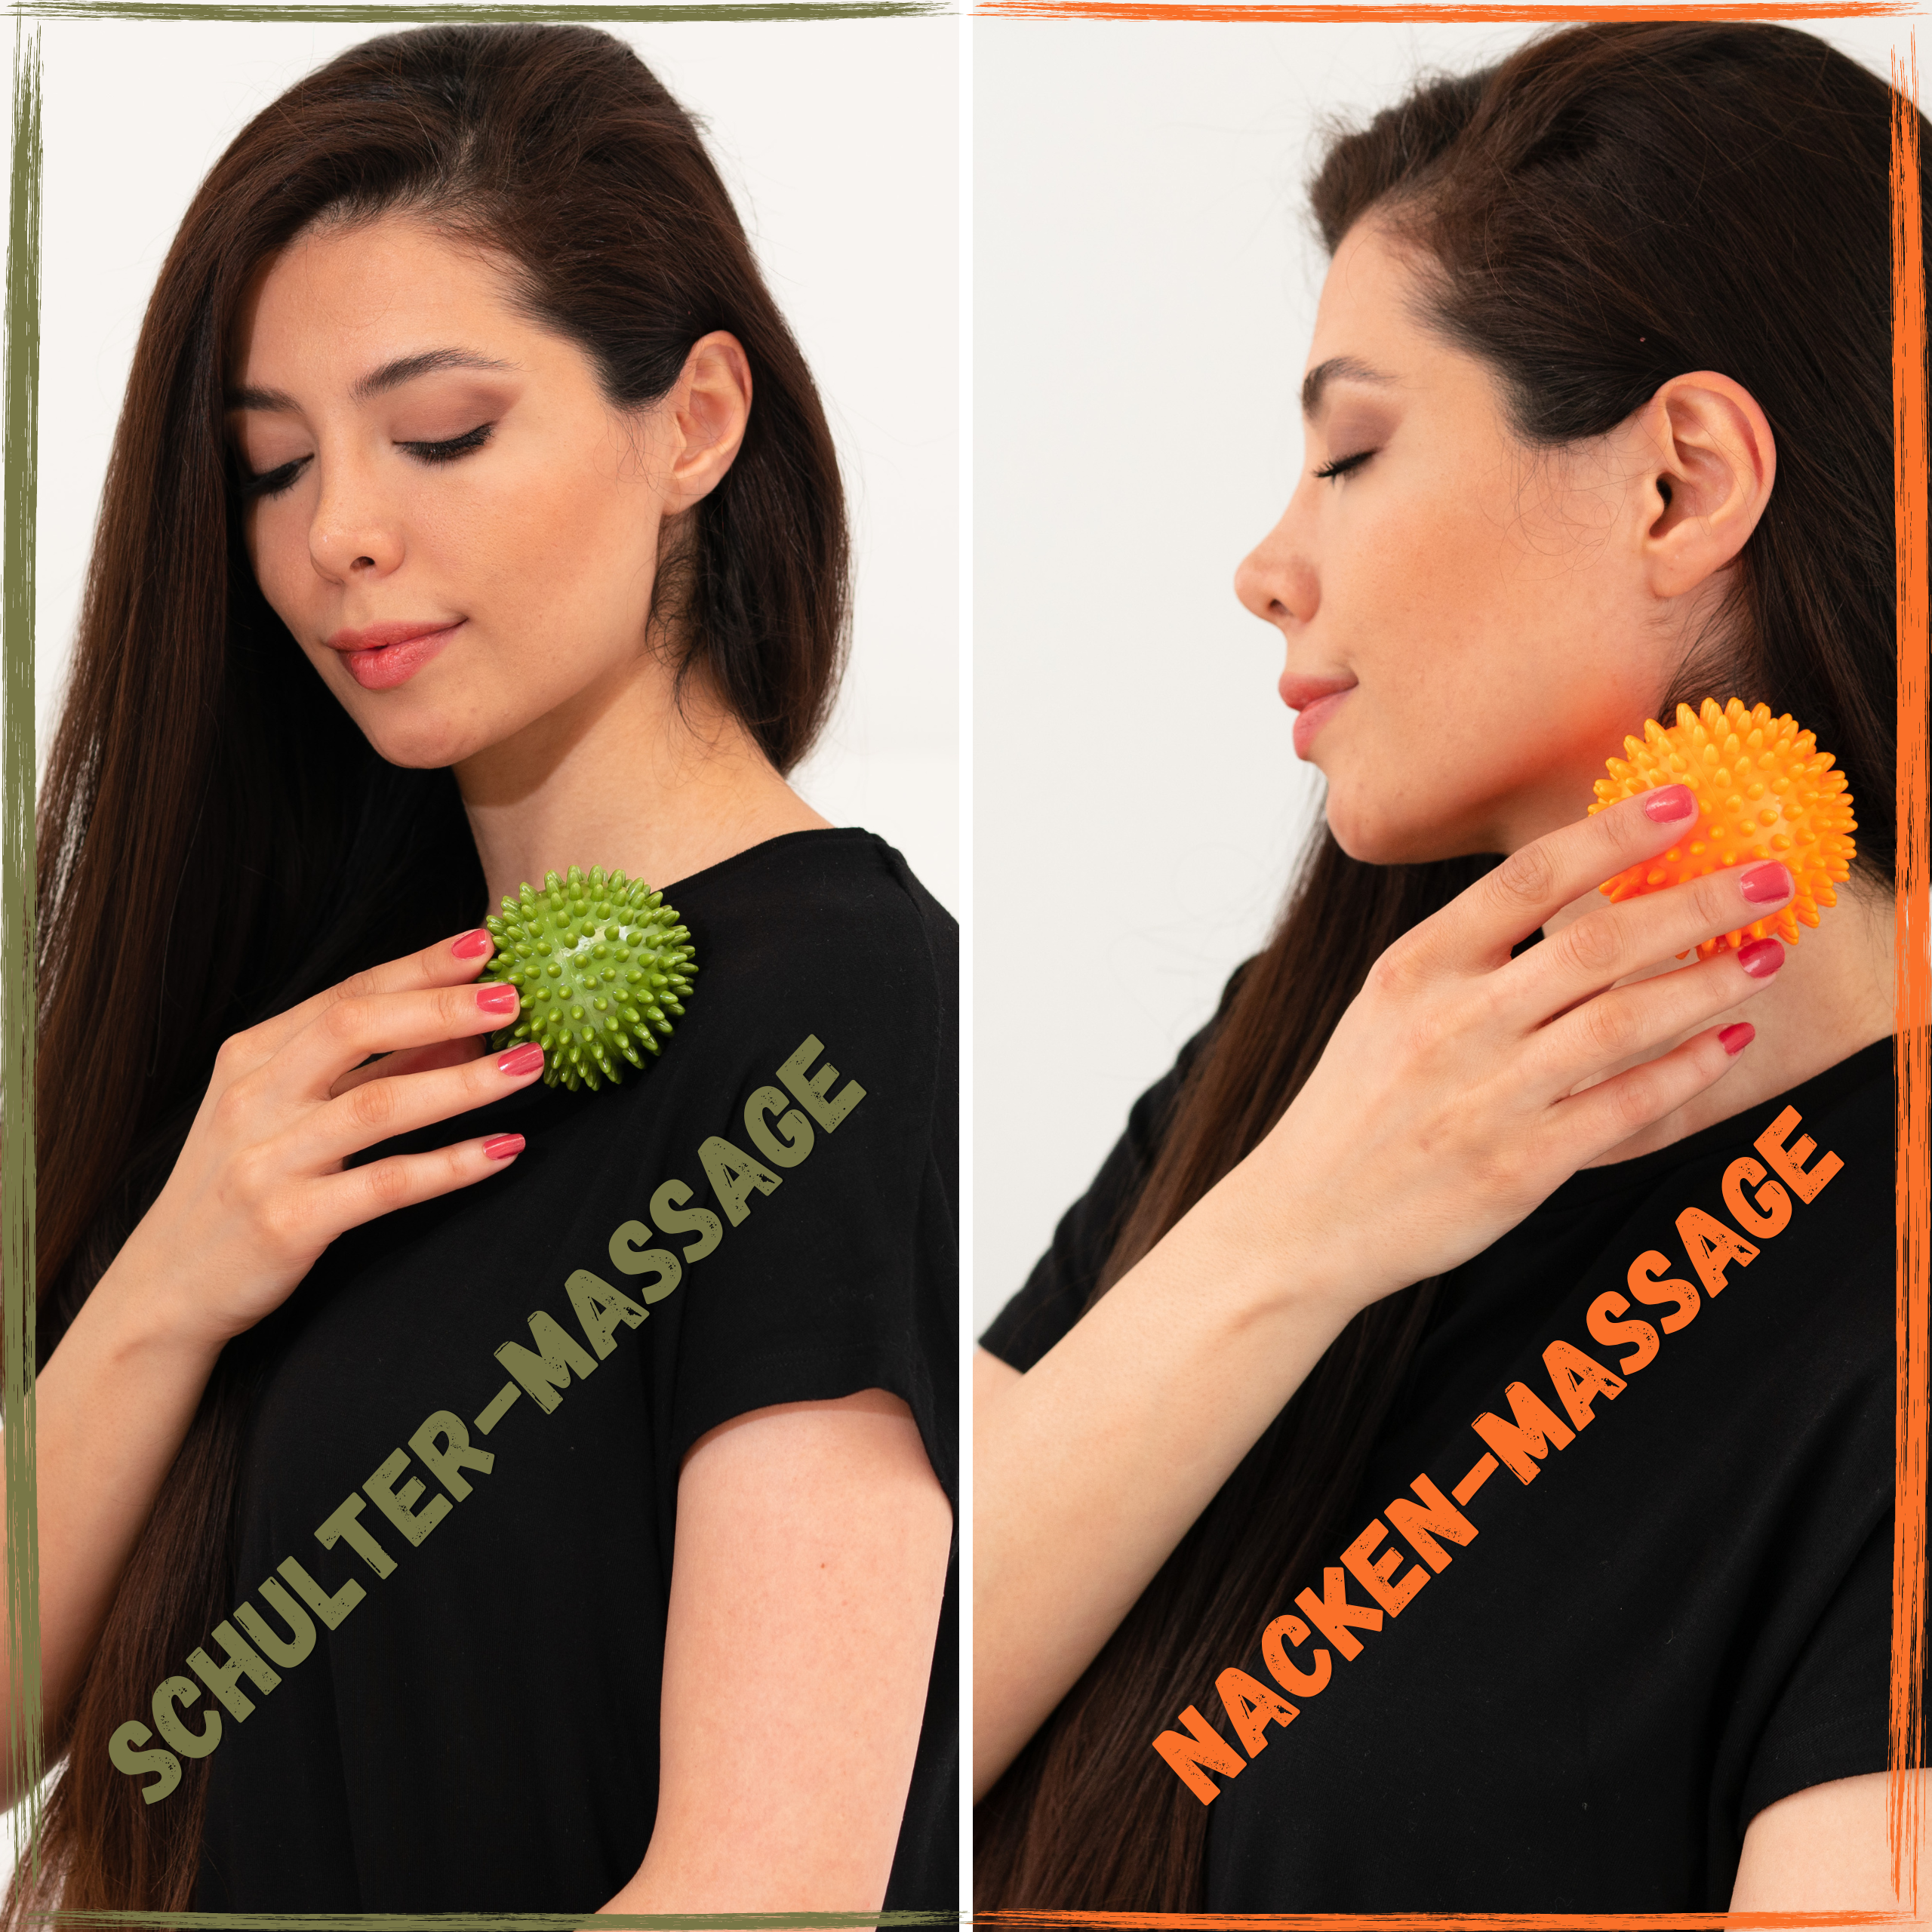 Oberes Bild: Frau verwendet grünen Igelball / Massageball für Schulter-Massage. Unteres Bild: Frau verwendet orangefarbenen Igelball / Massageball für Nacken-Massage.